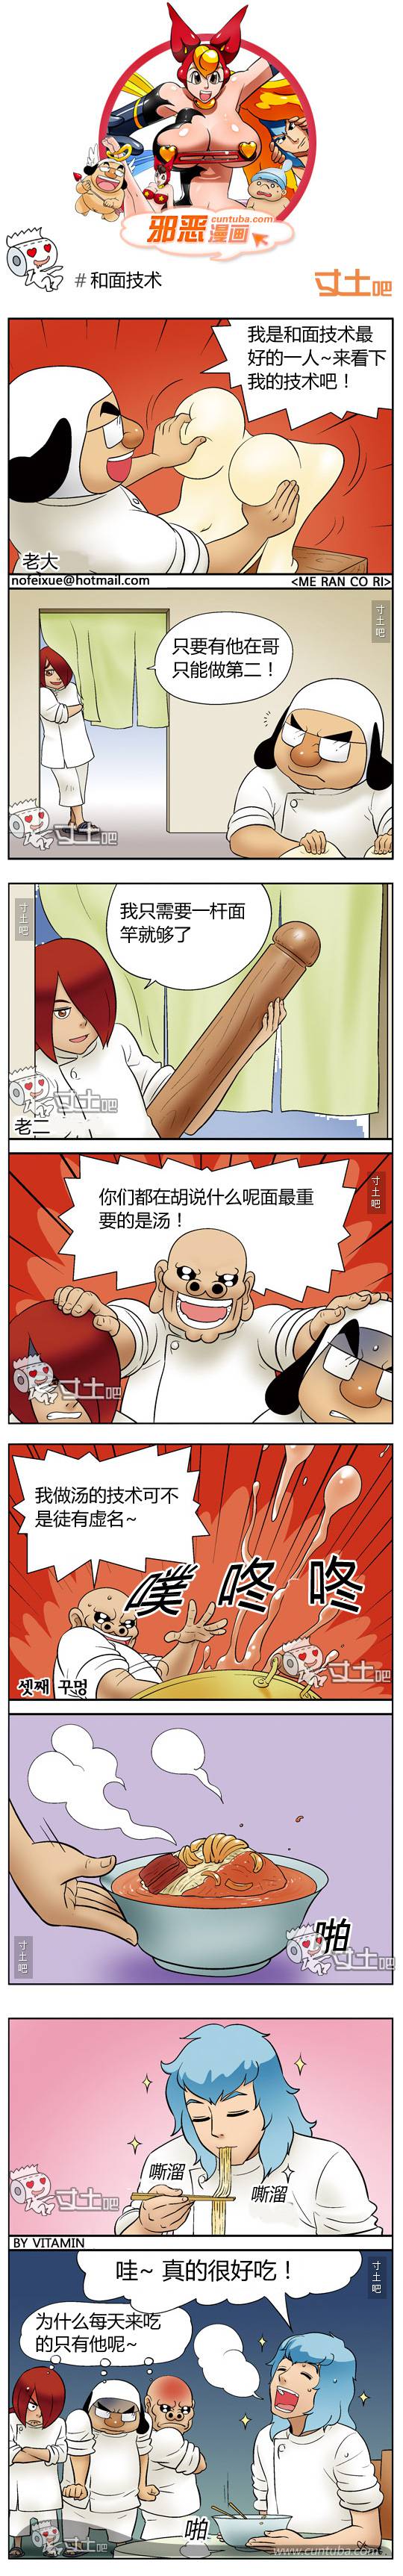 邪恶漫画爆笑囧图第181刊：健康与技术